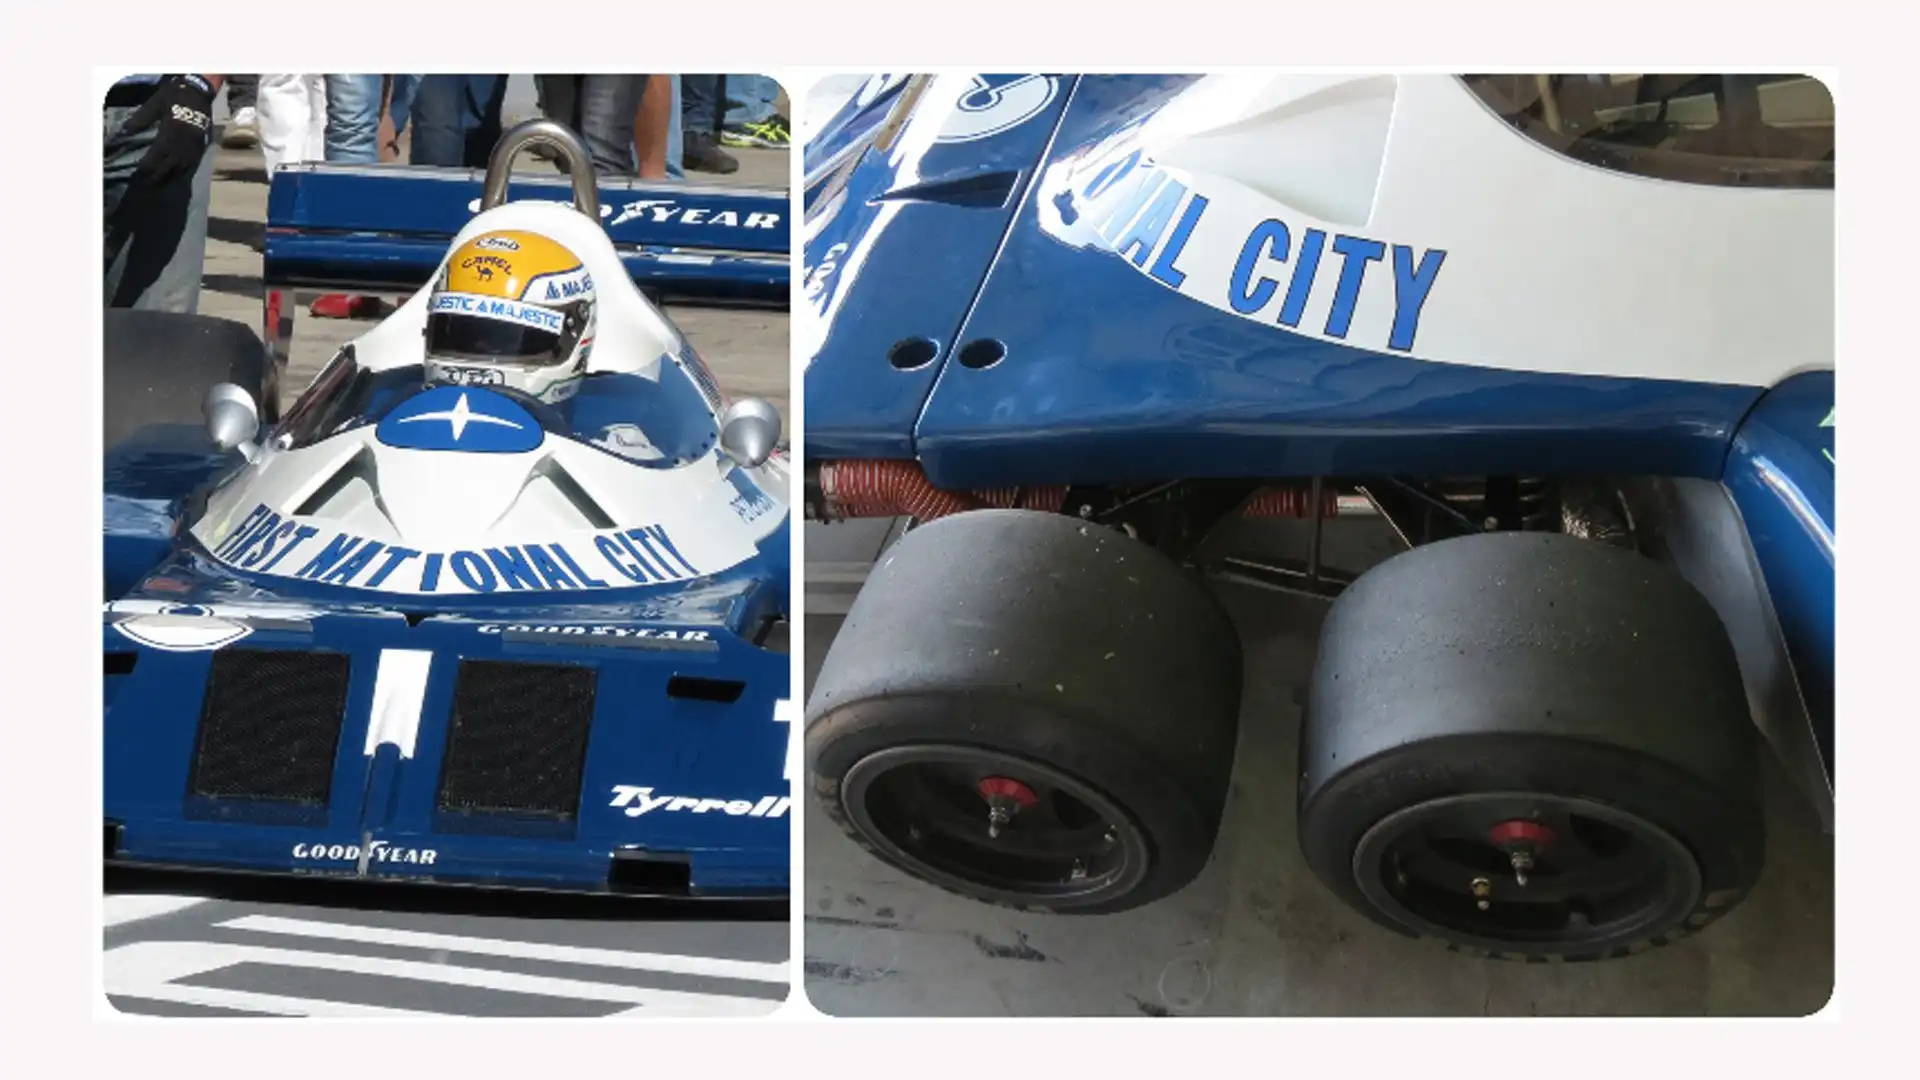 Una macchina entrata nella storia: la Tyrrell a 6 ruote